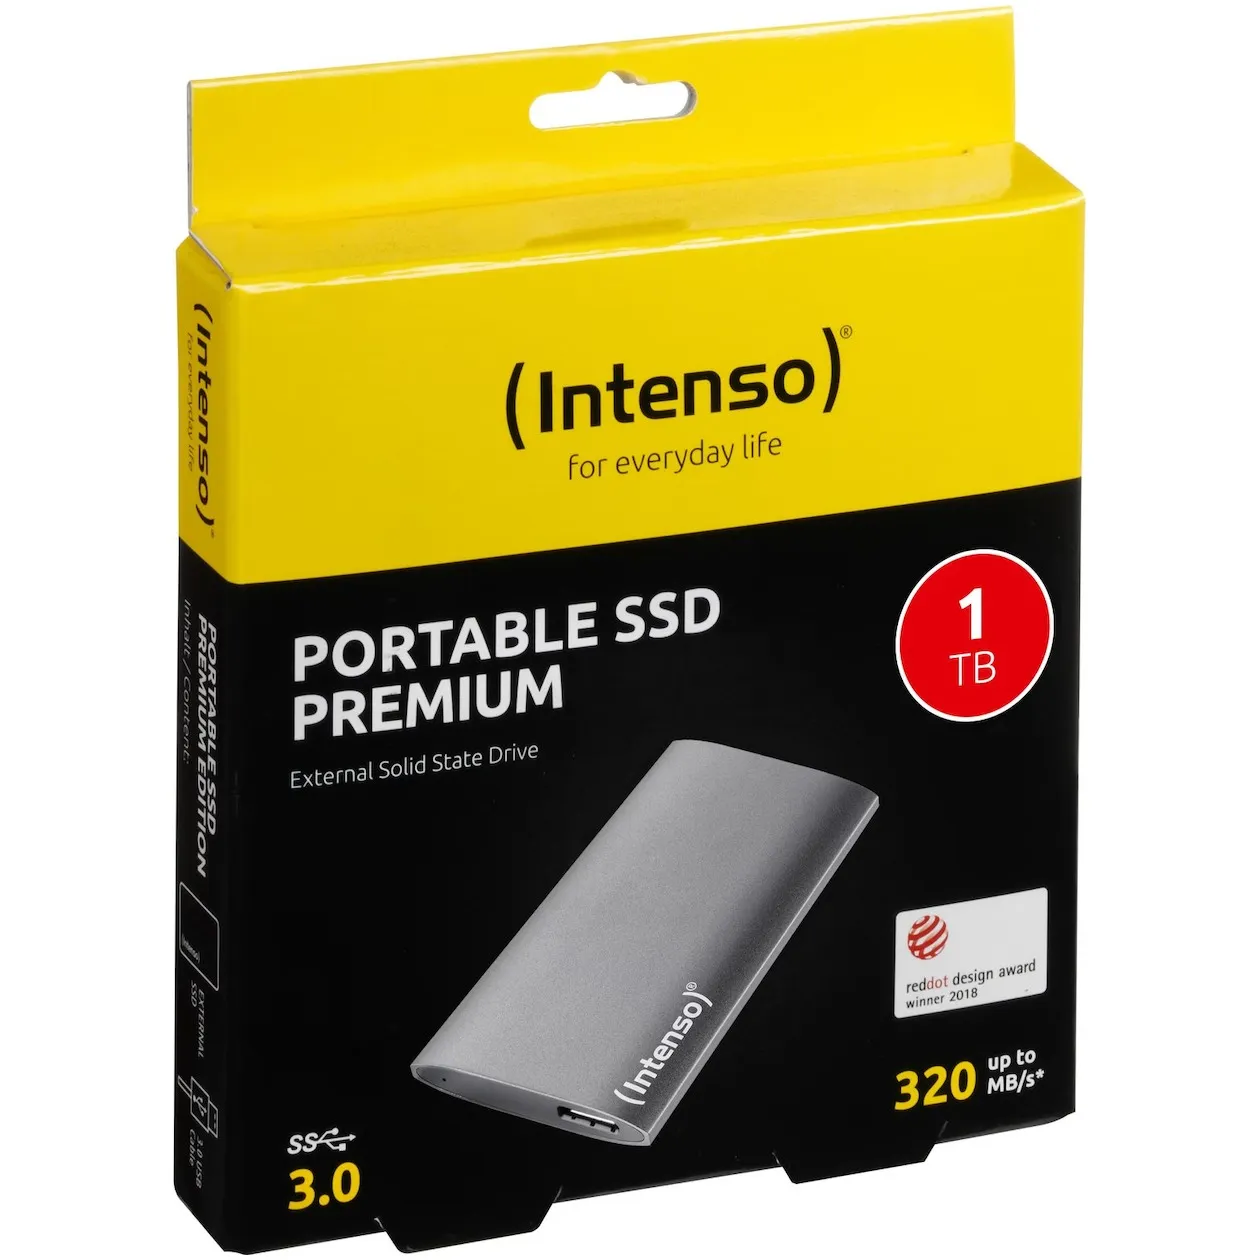 Intenso External SSD Premium 1TB